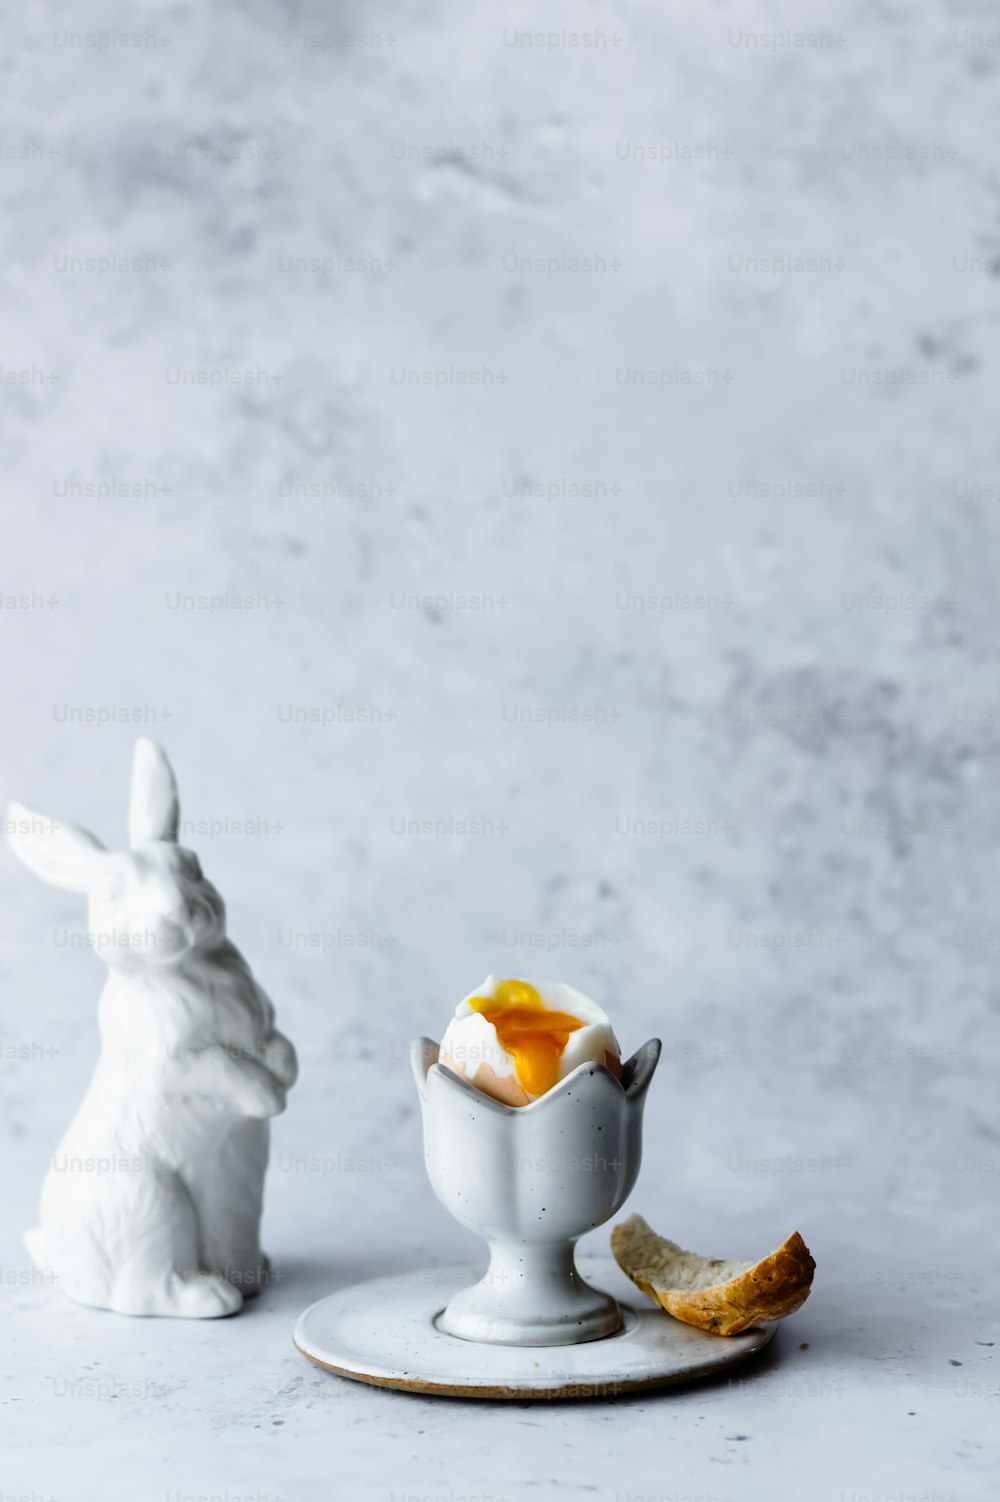 계란 한 그릇 옆에 앉아 있는 흰 토끼 입상